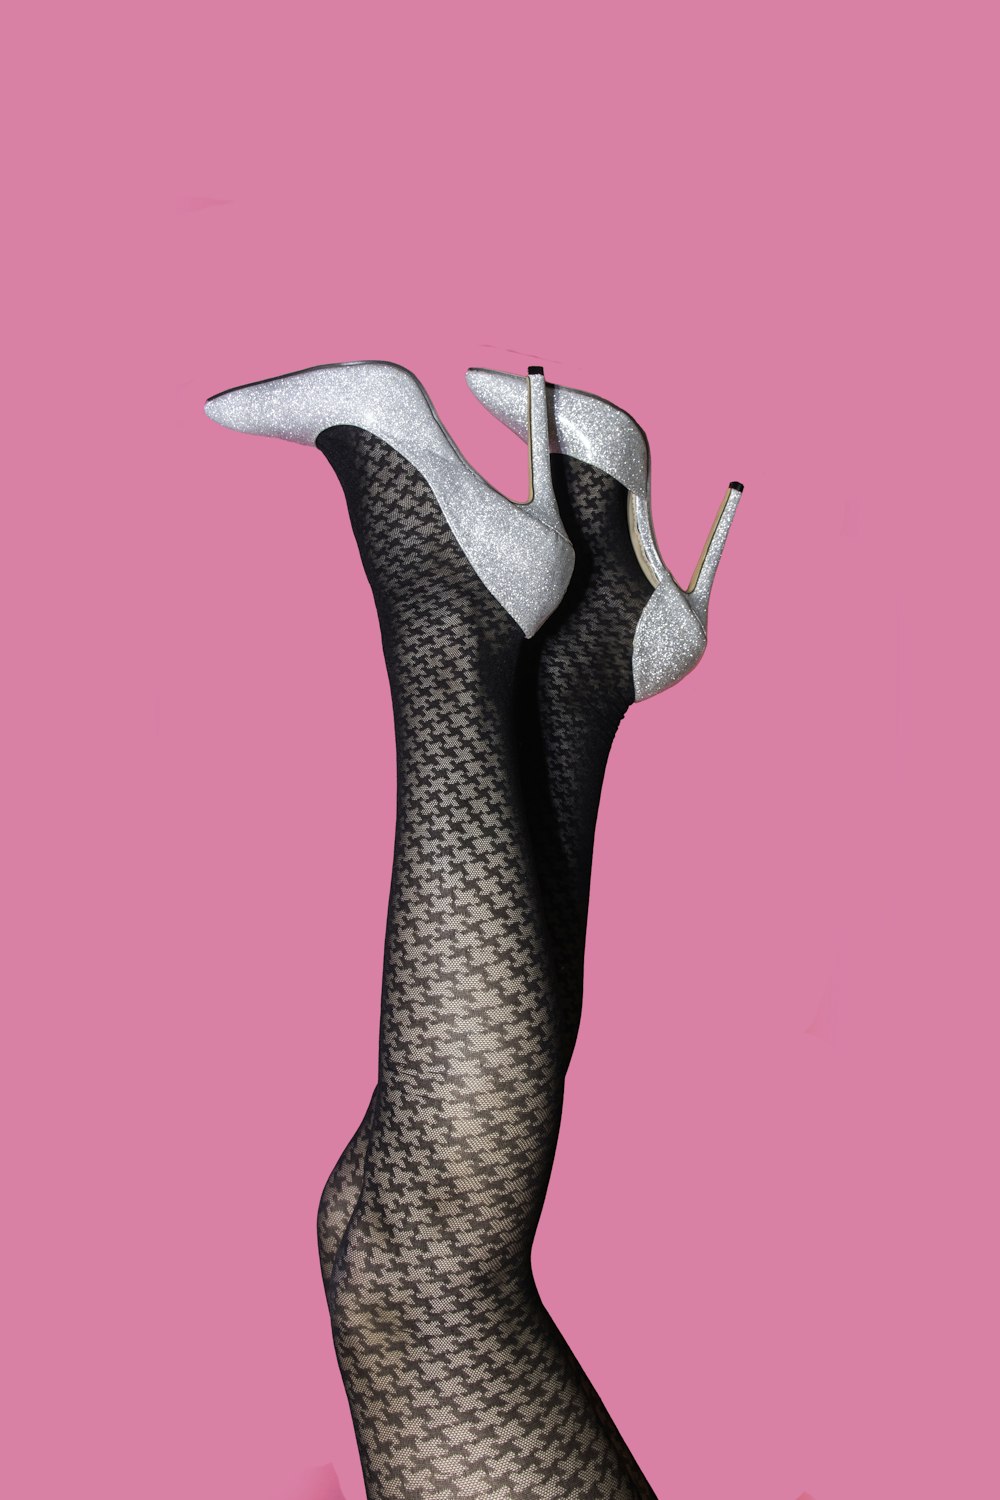 Las piernas de una mujer en medias de red sobre un fondo rosa